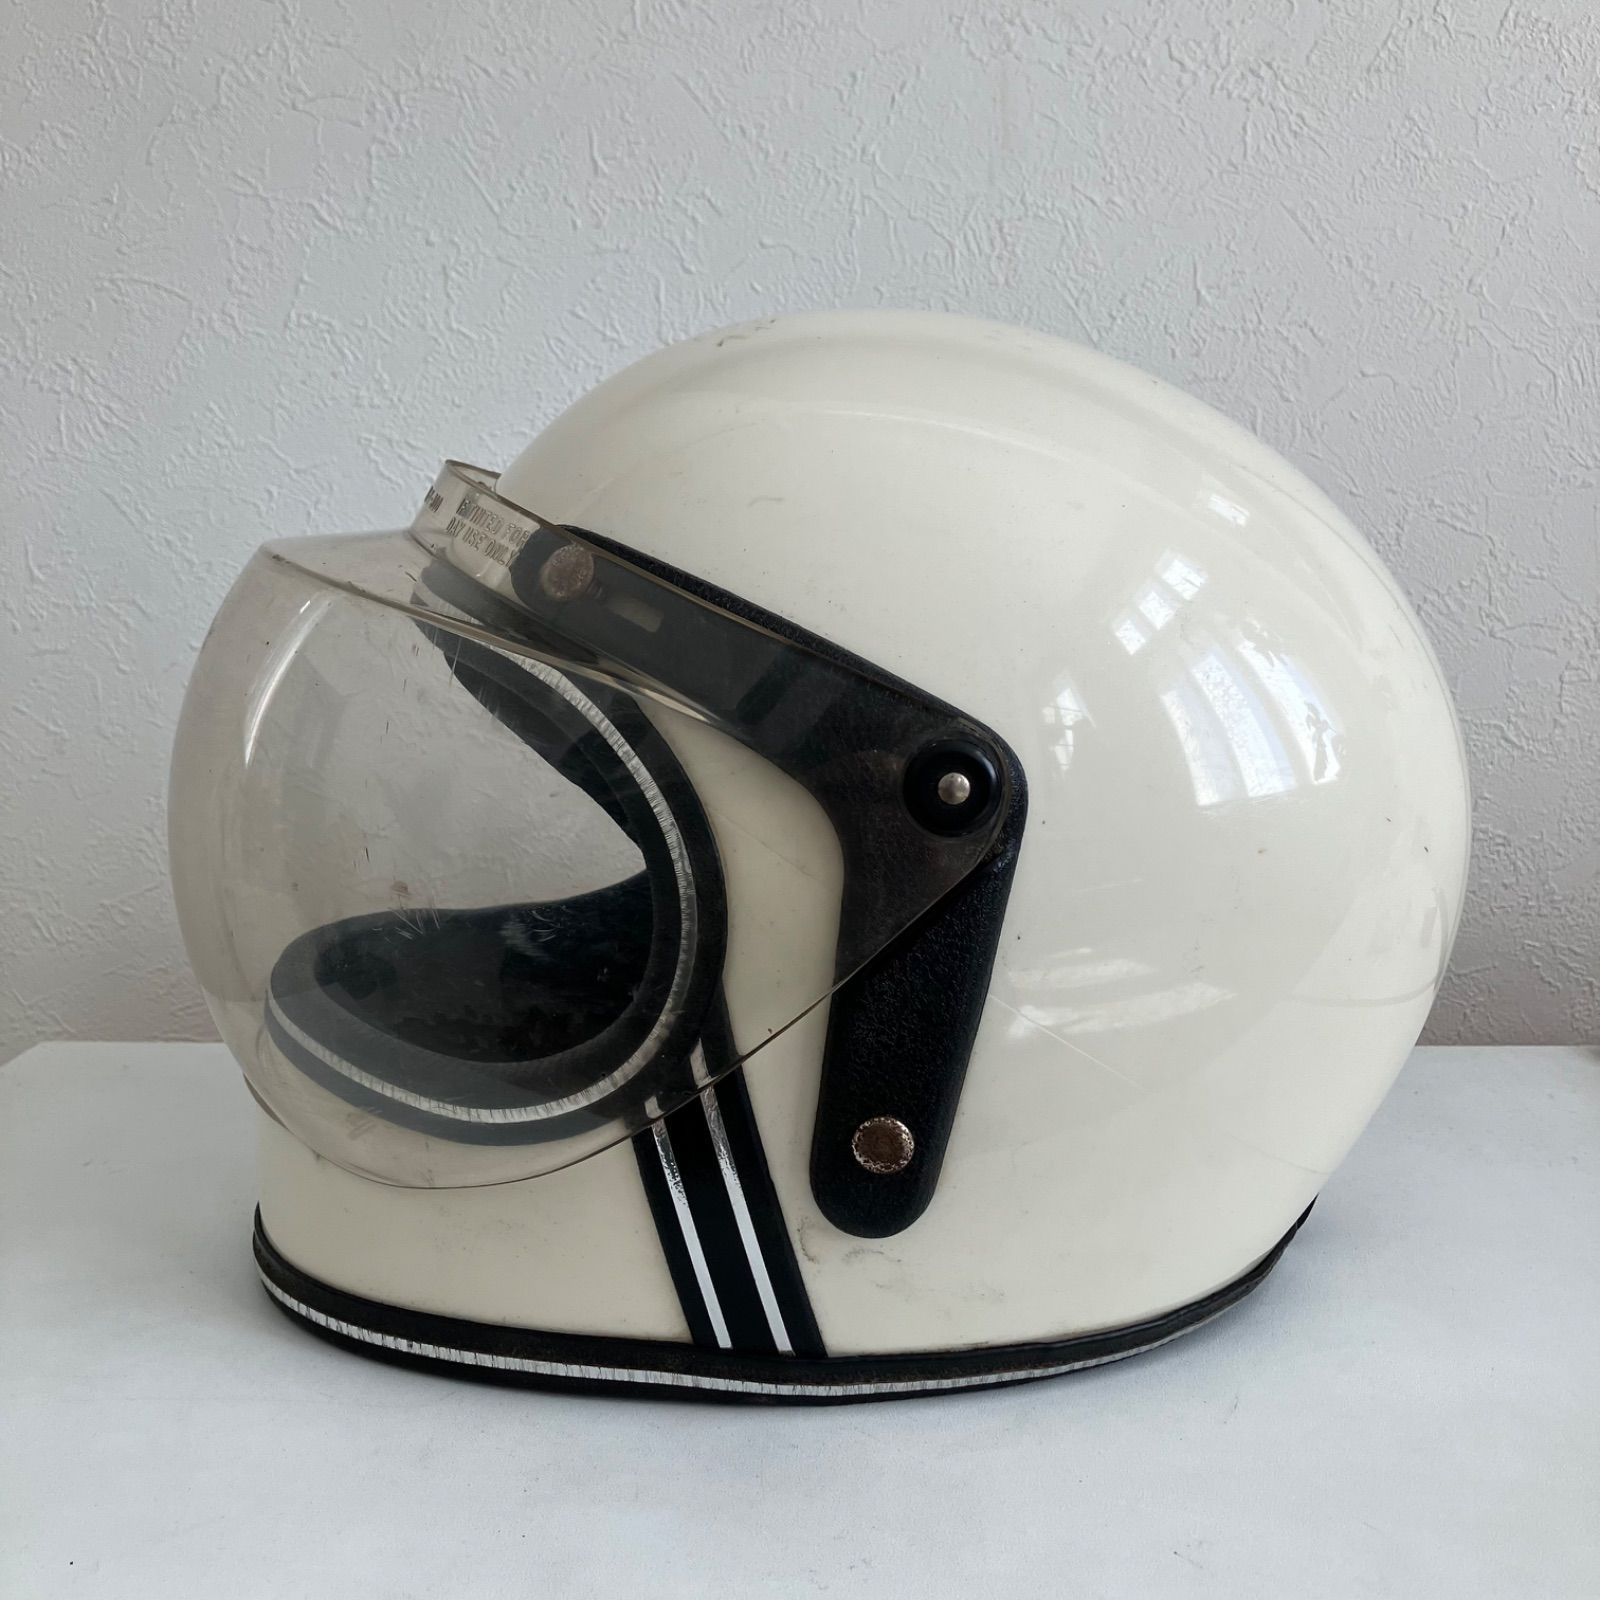 GRANT RG-9☆S-Mサイズ ビンテージヘルメット 1970年代 白 希少 旧車